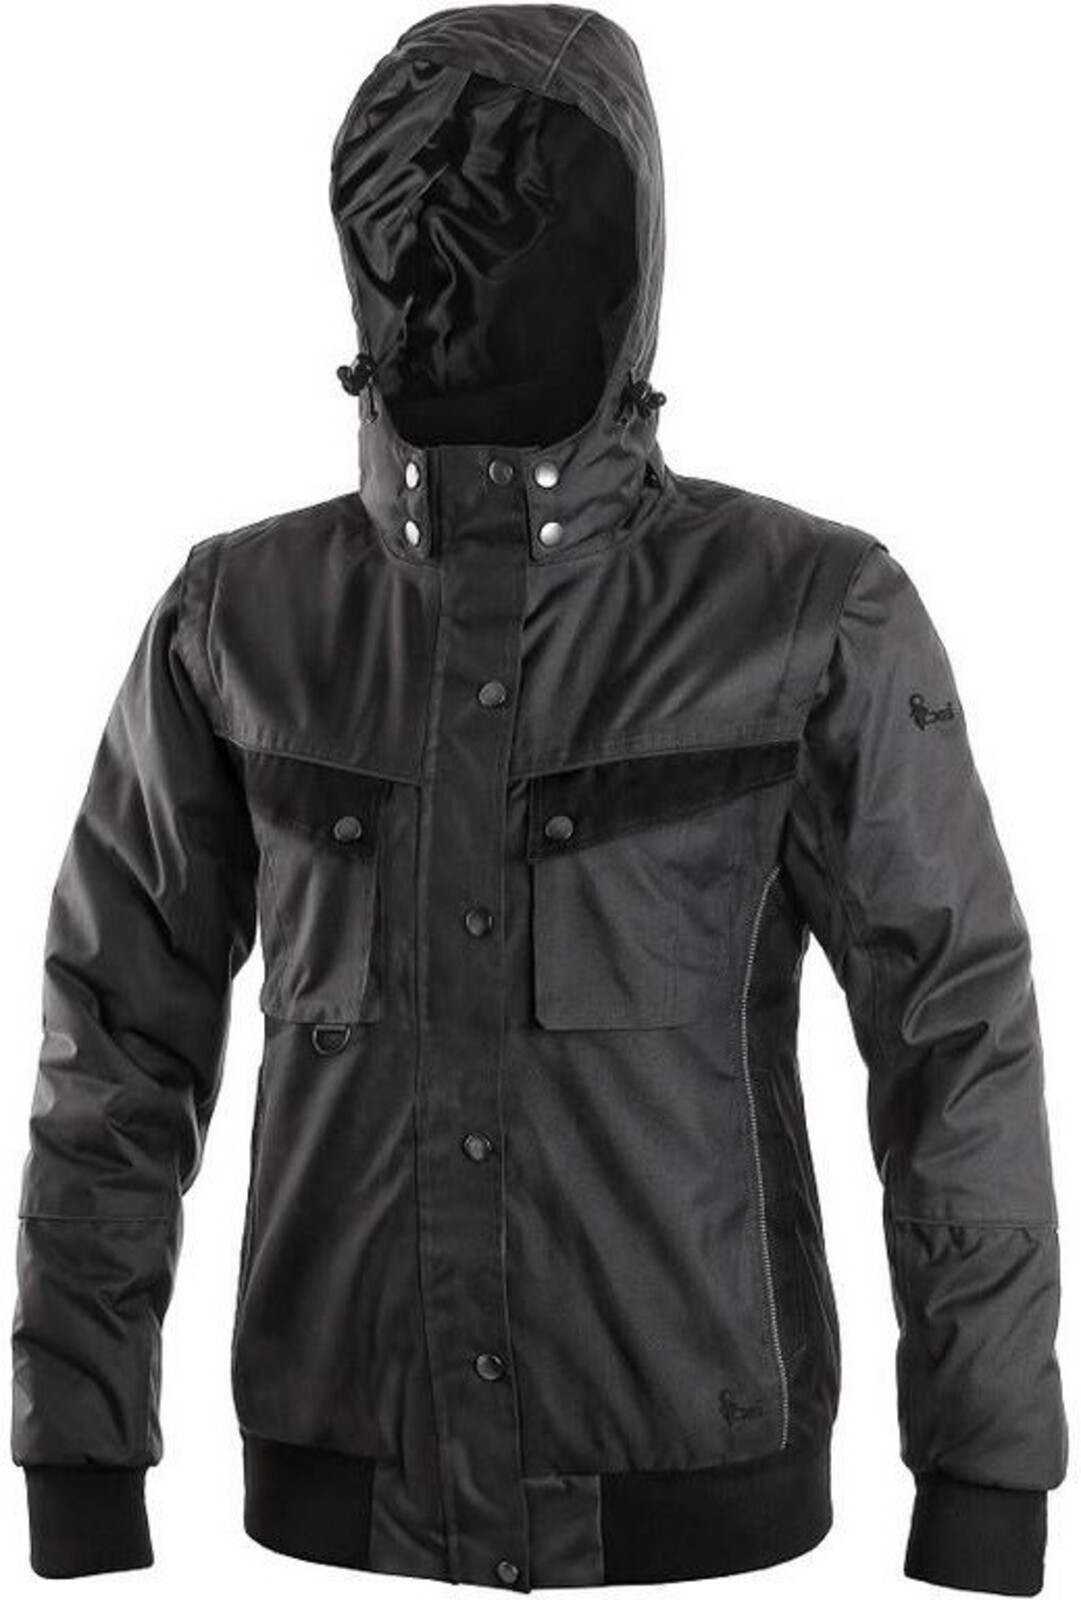 Dámska zimná bunda CXS Irvine 2v1 - veľkosť: 3XL, farba: sivá/čierna